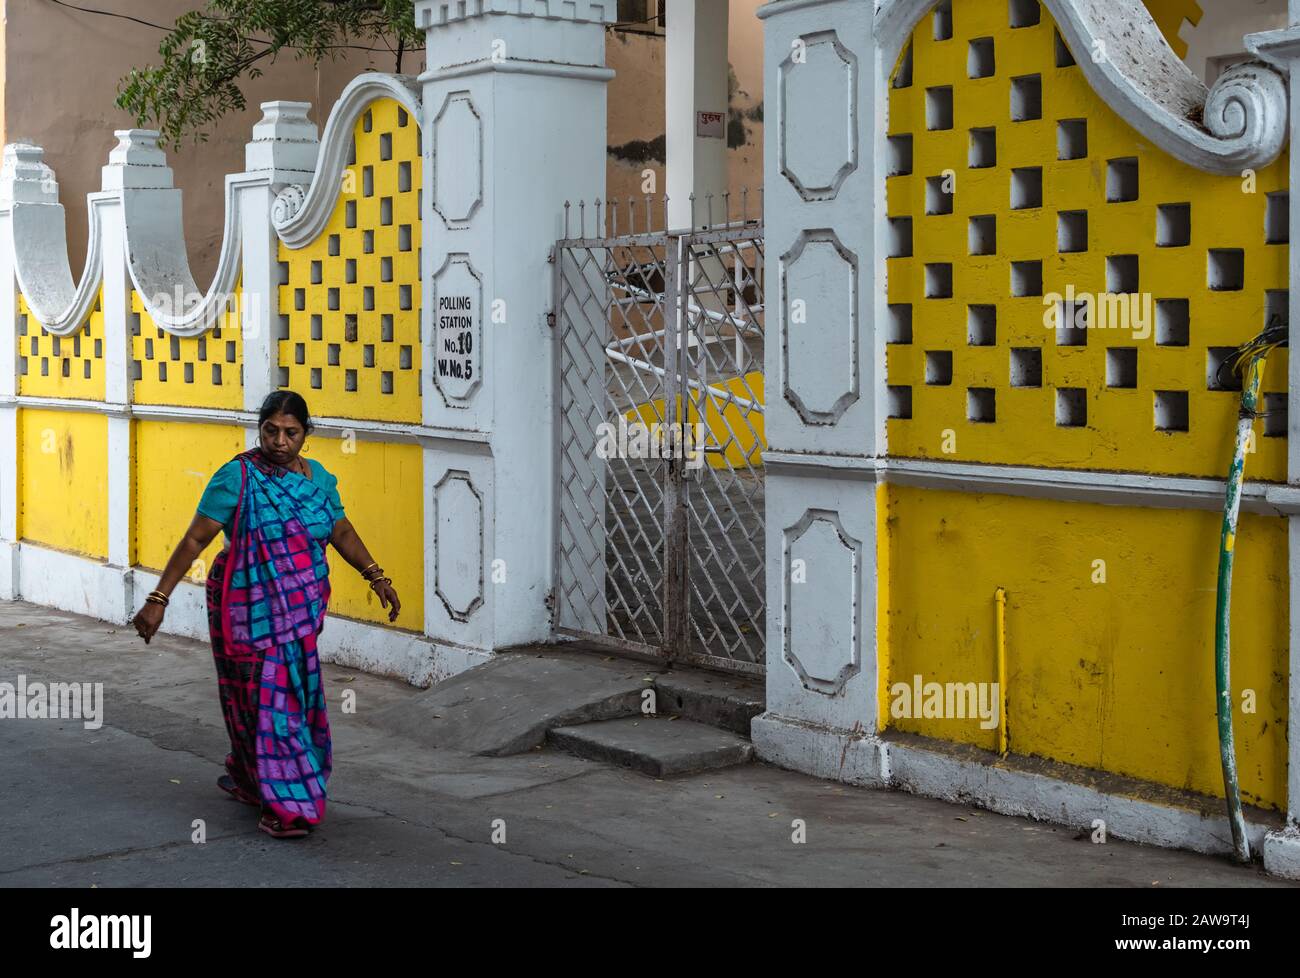 DIU, Indien - Dezember 2018: Eine Frau geht an den gelben Wänden eines Hauses auf den Straßen von Diu vorbei. Stockfoto